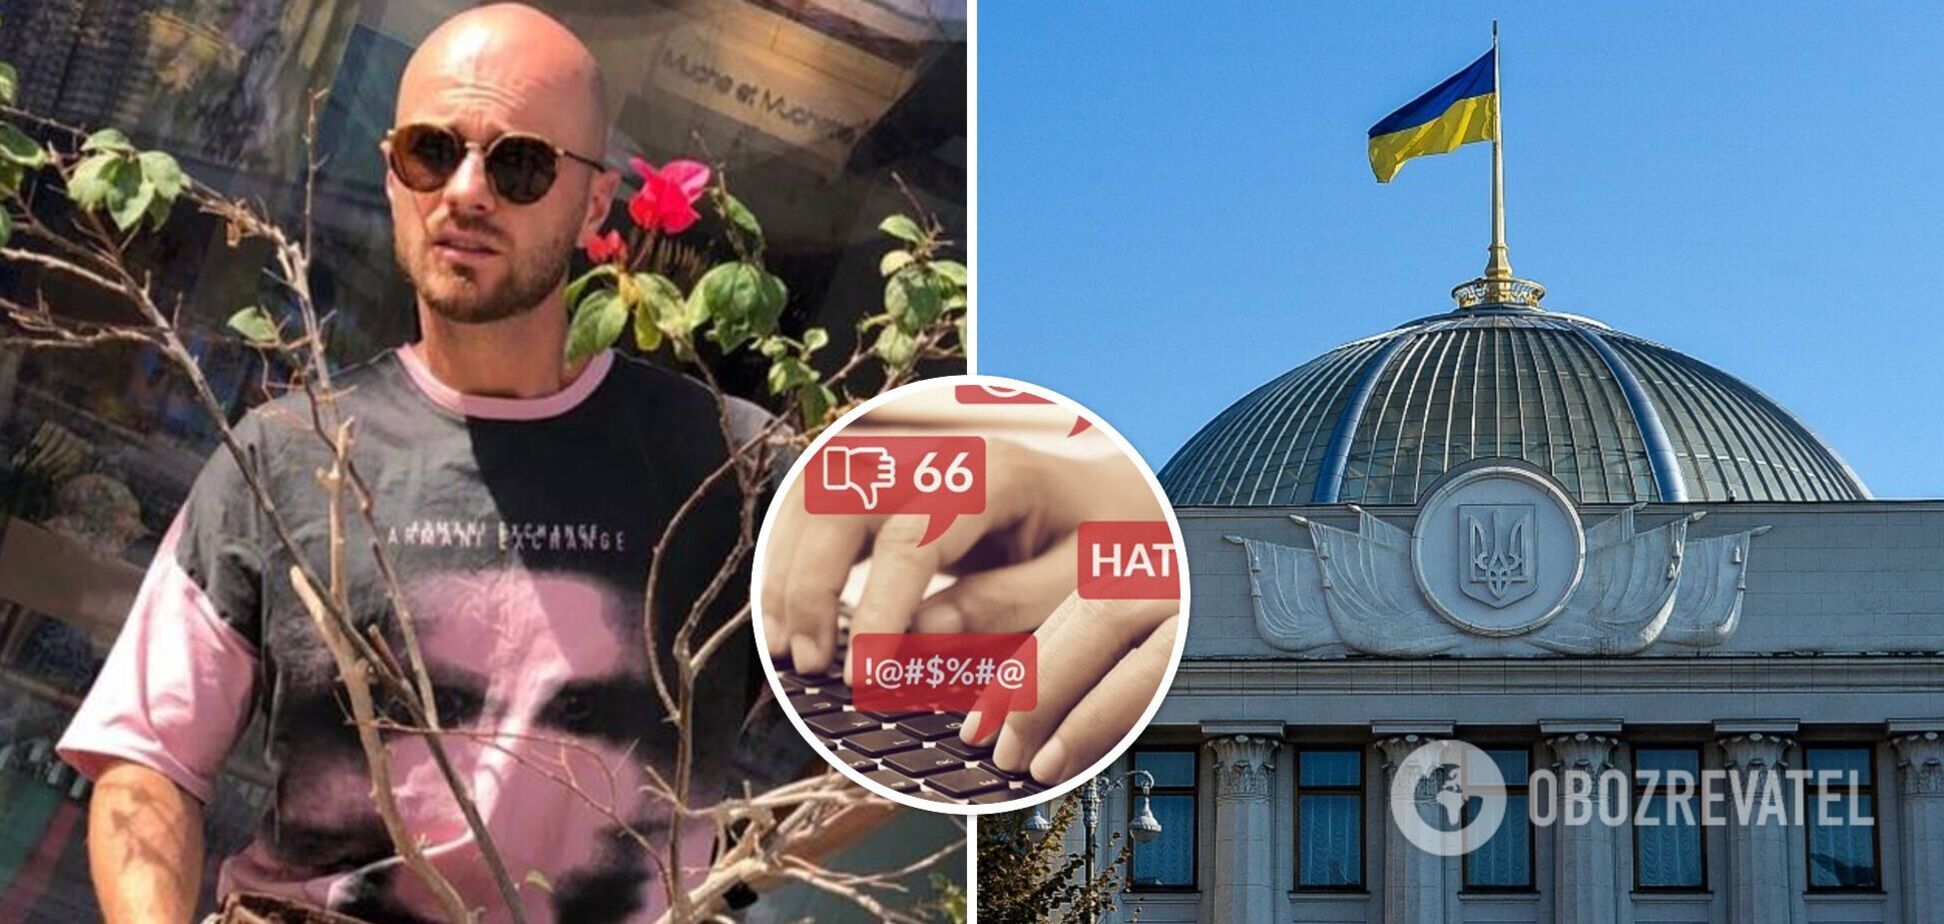 'Может забыть о карьере в Украине': в сети 'разнесли' Влада Яму, который мечтает стать политиком. Фото